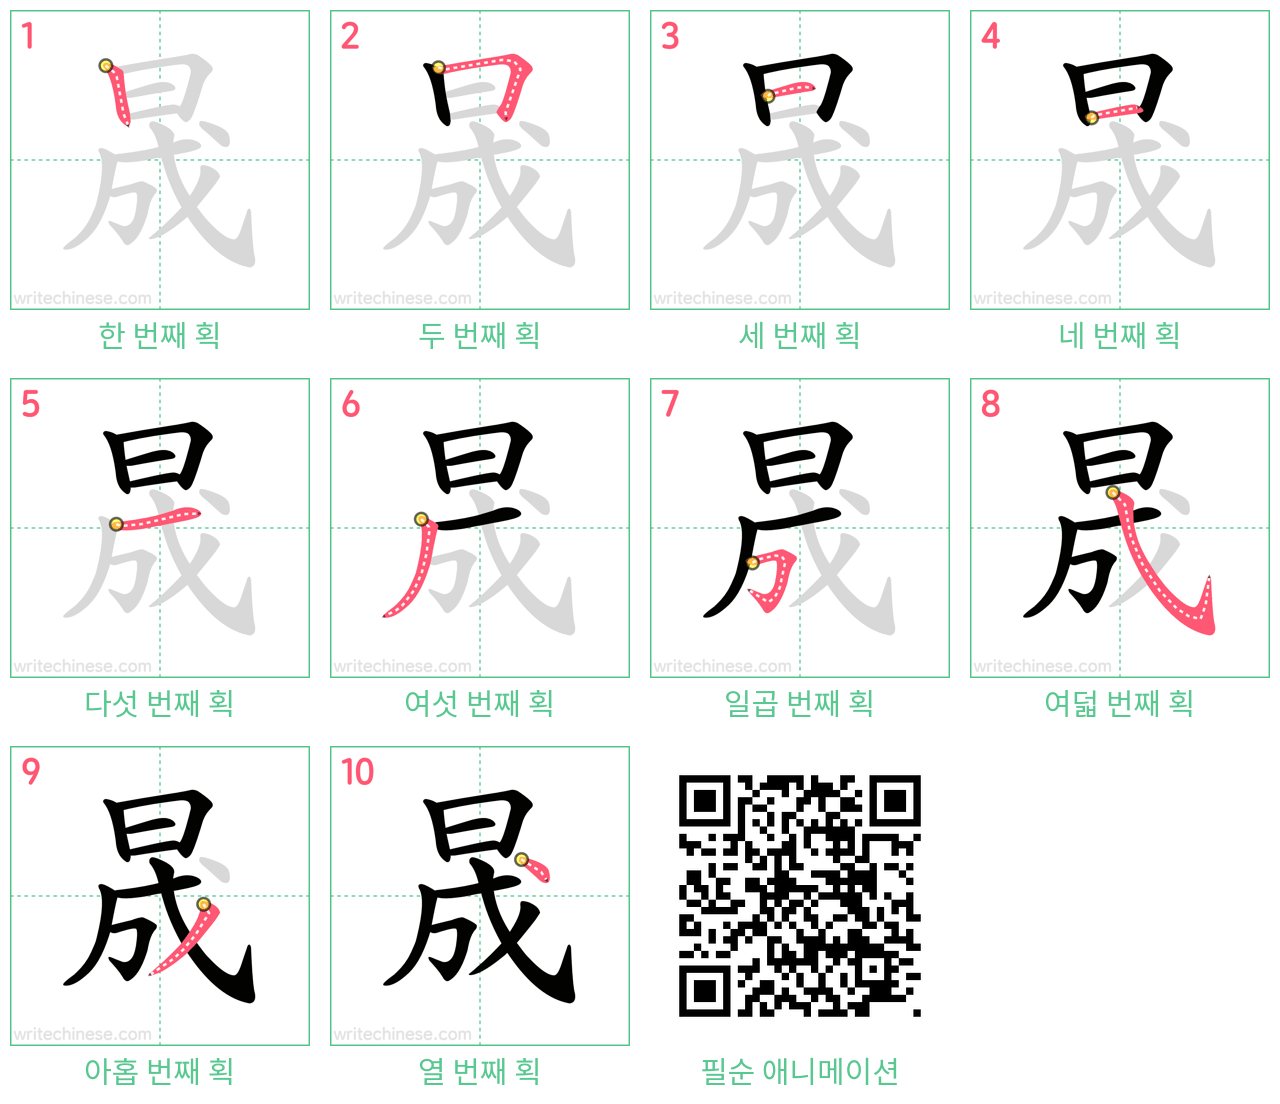 晟 step-by-step stroke order diagrams